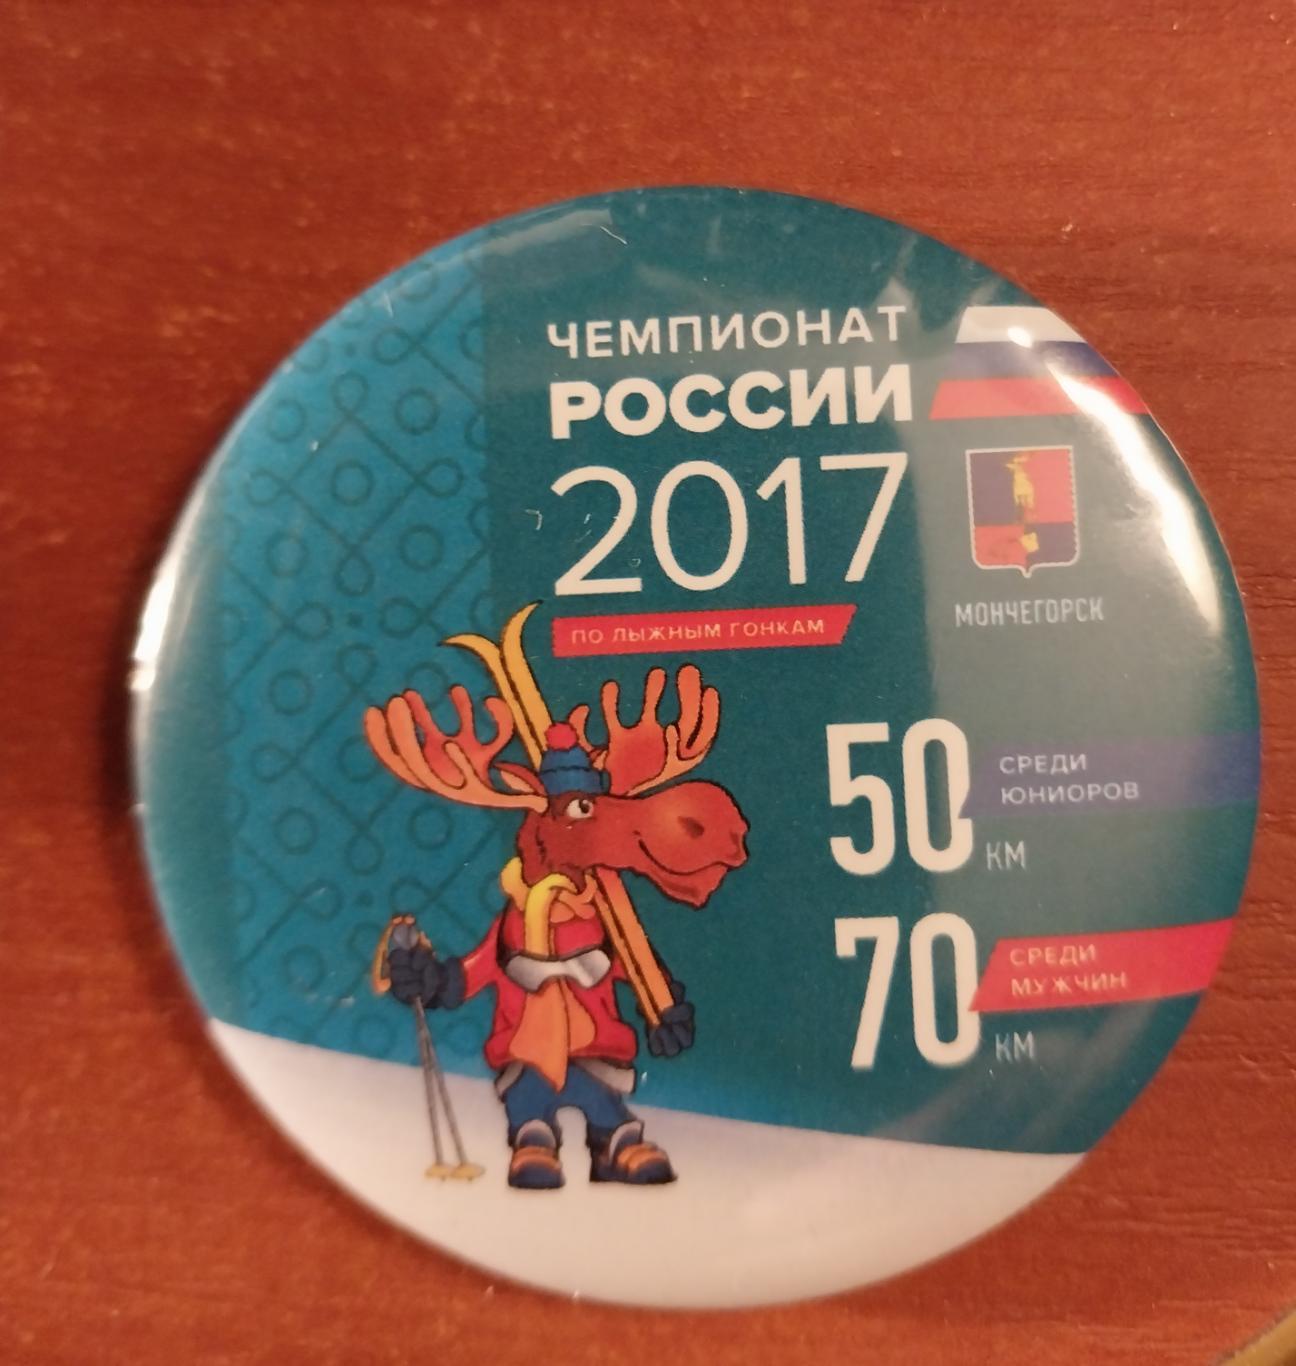 Лыжные гонки. Чемпионат России 2017. Мончегорск. 70 км